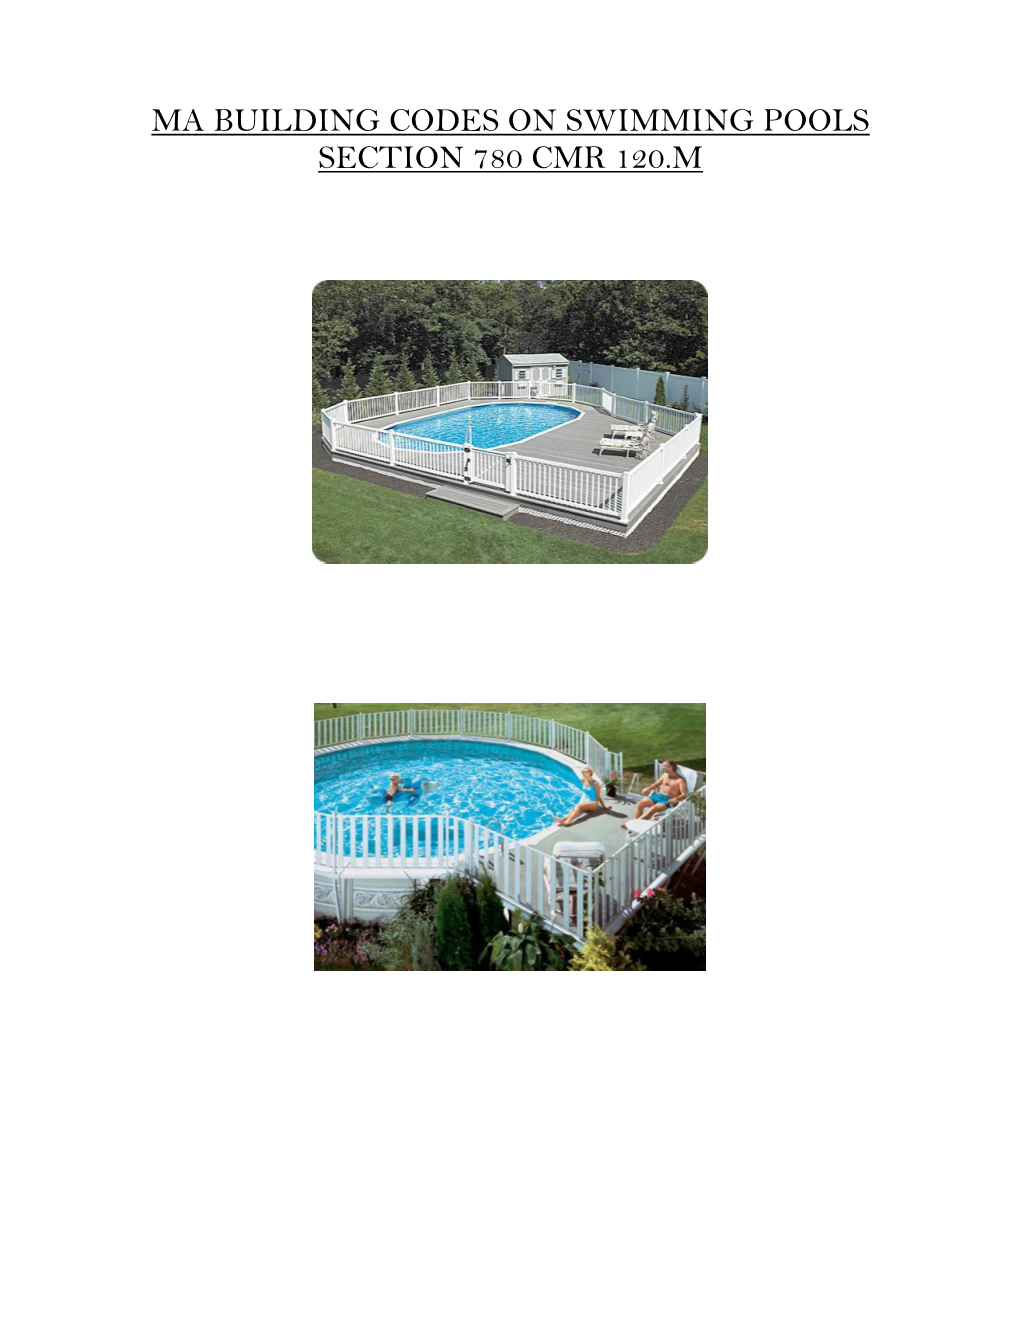 Swimming Pool Code